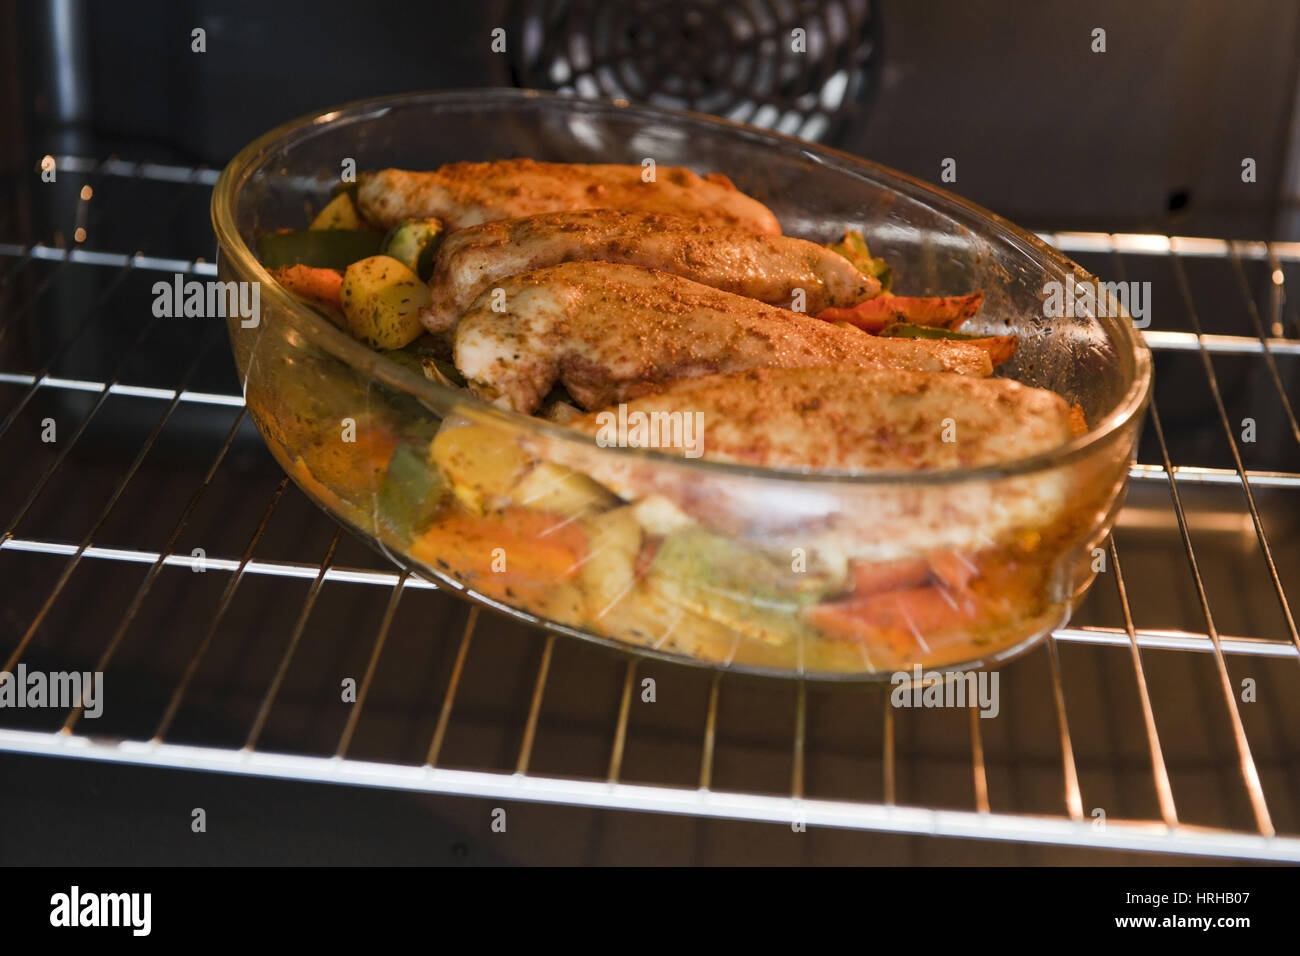 Gemuesepfanne Mit Huhn Im Backrohr - Gemüse-Pfanne mit Huhn im Ofen  Stockfotografie - Alamy